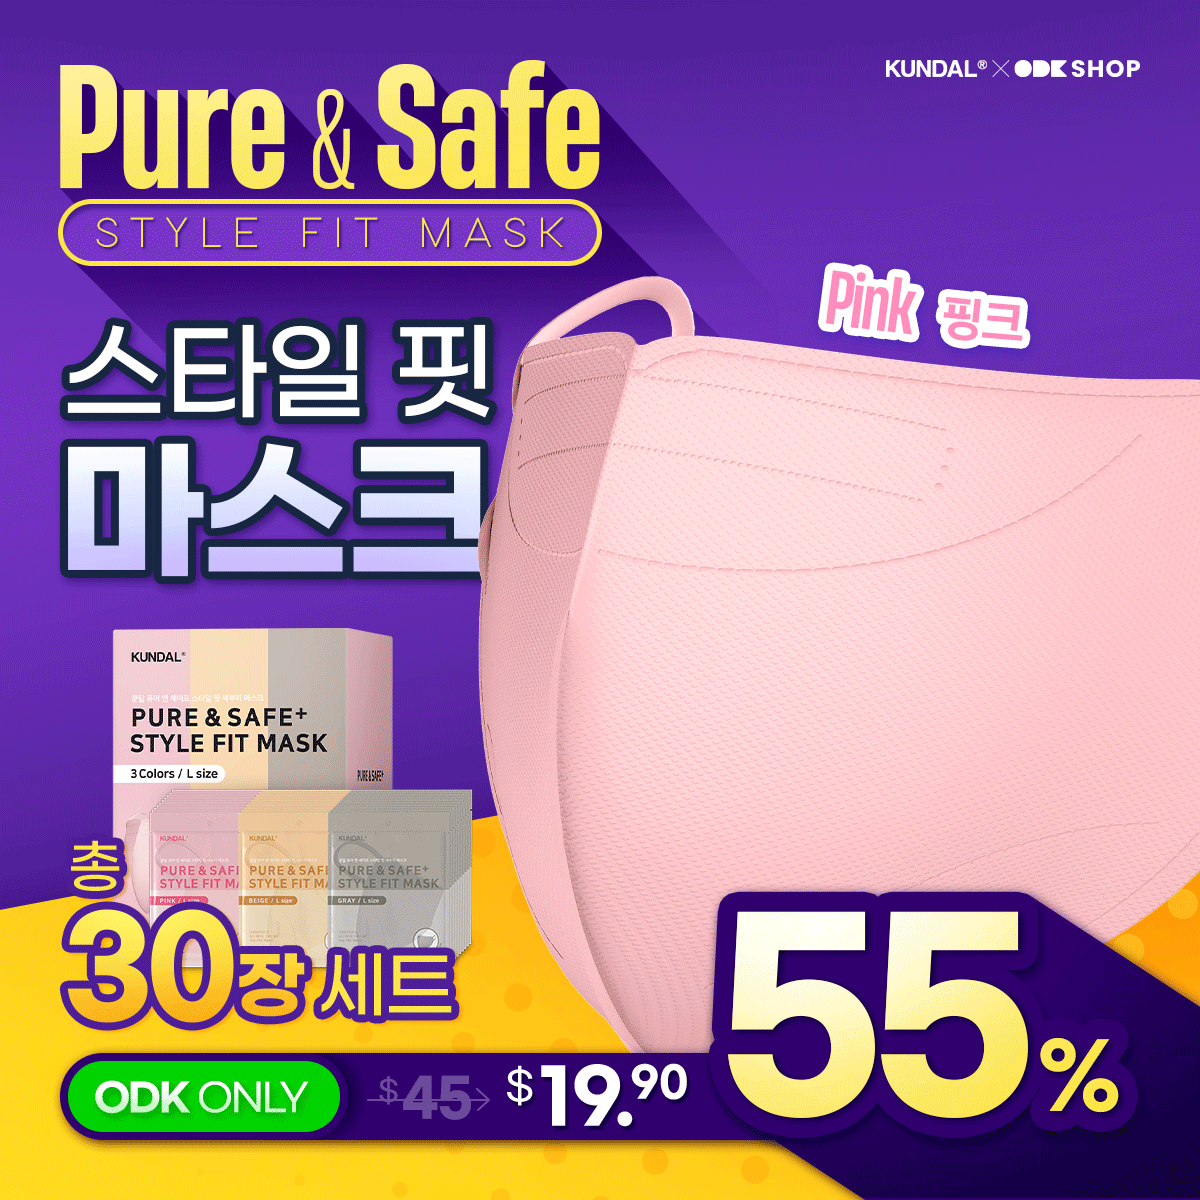 KUNDAL Pure & Safe Style Fit Face Mask 3 Color Large (Pink, Grey, Beige) (10 EA/ 30 Total)